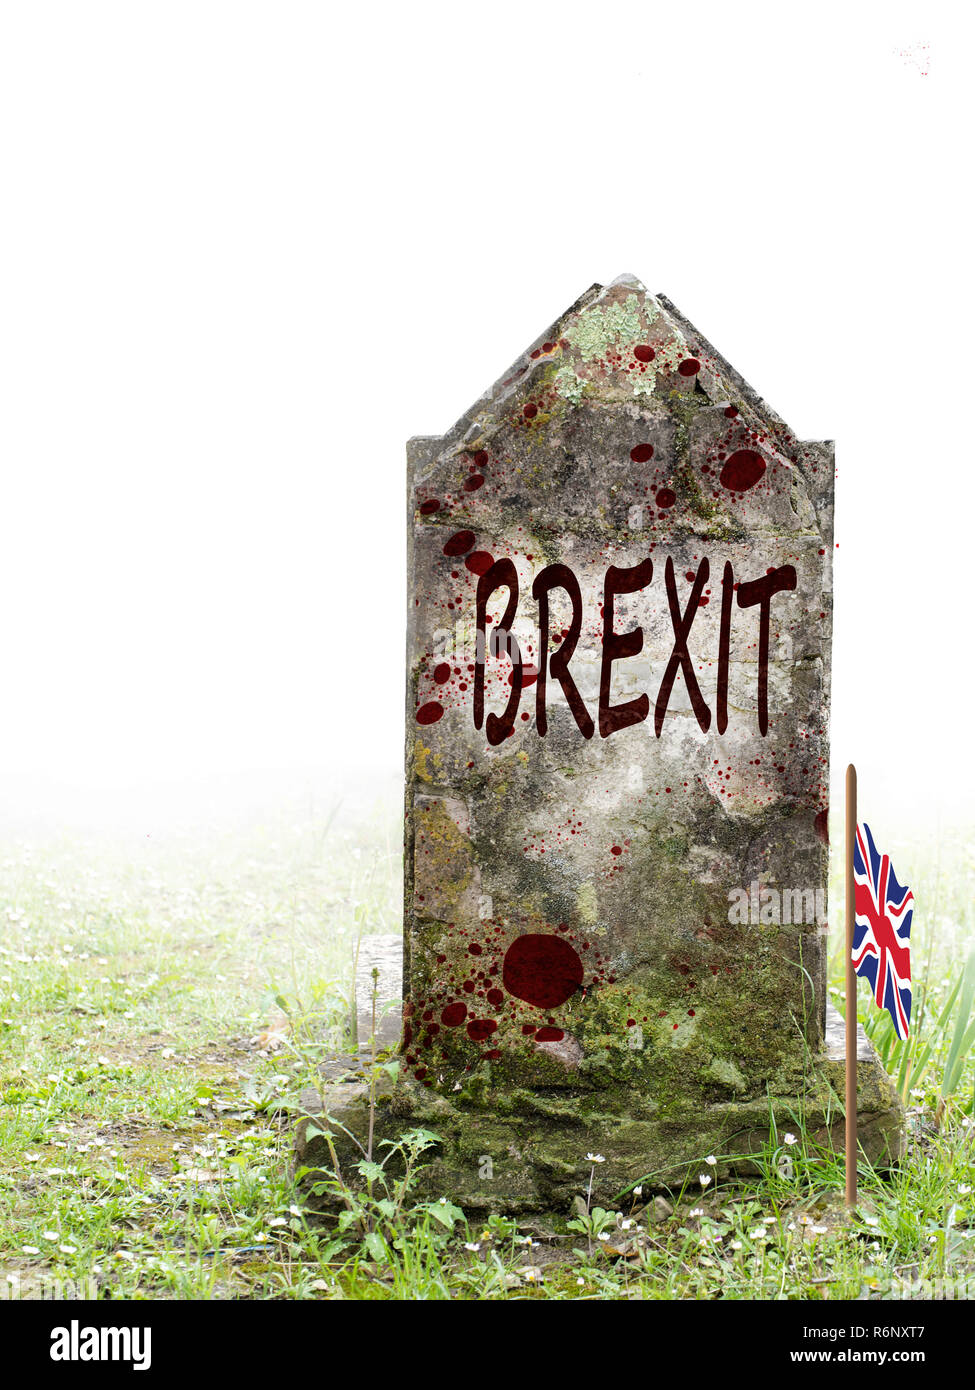 Brexit, morte de la politique britannique. L'ancienne pierre tombale dans le brouillard, avec du sang et de gaines de drapeau. Banque D'Images